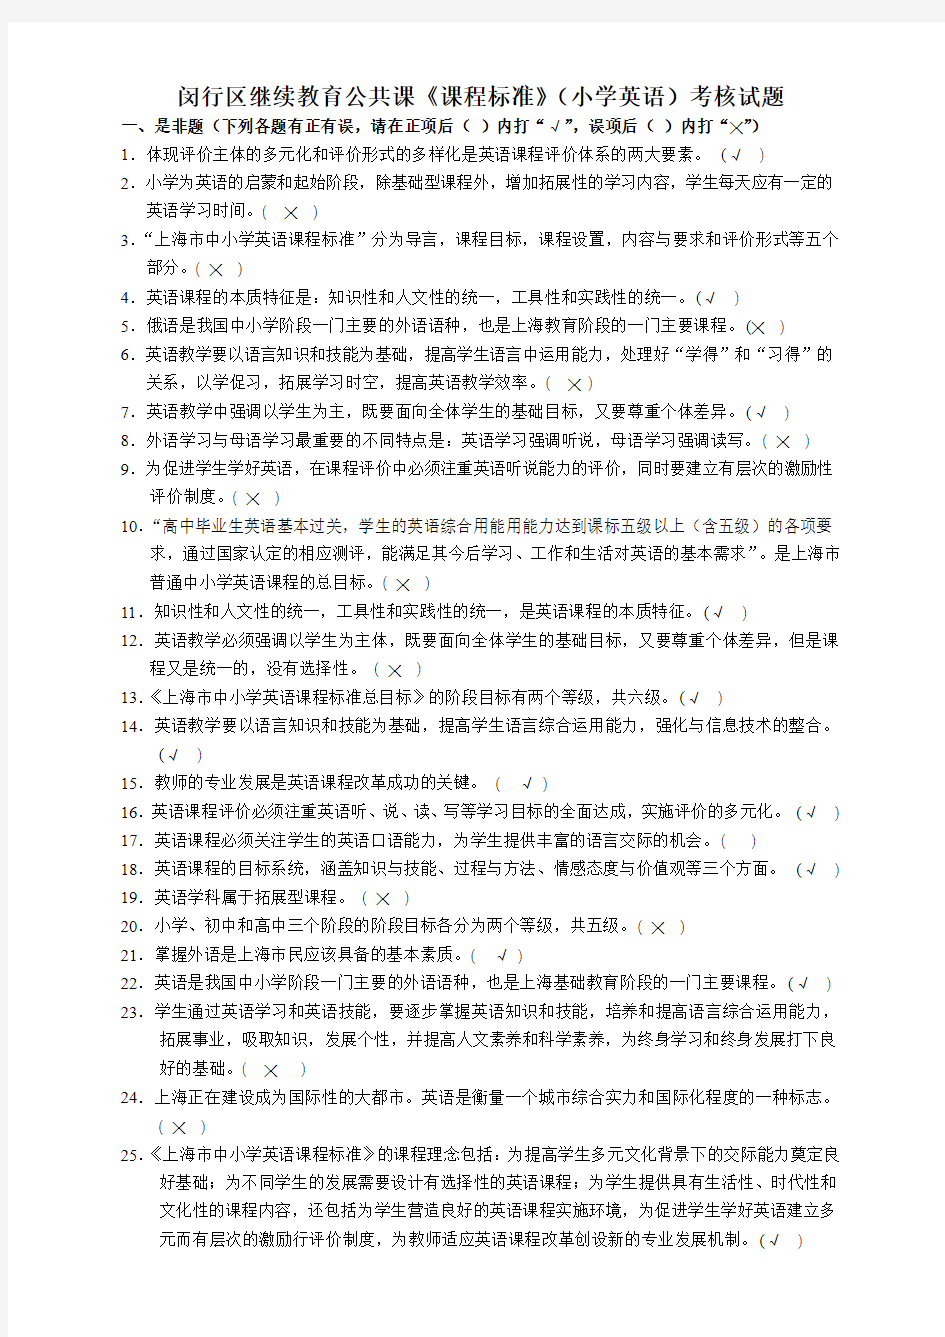 (最新) 上海市中小学英语课程标准(小学英语)考核试题和答案